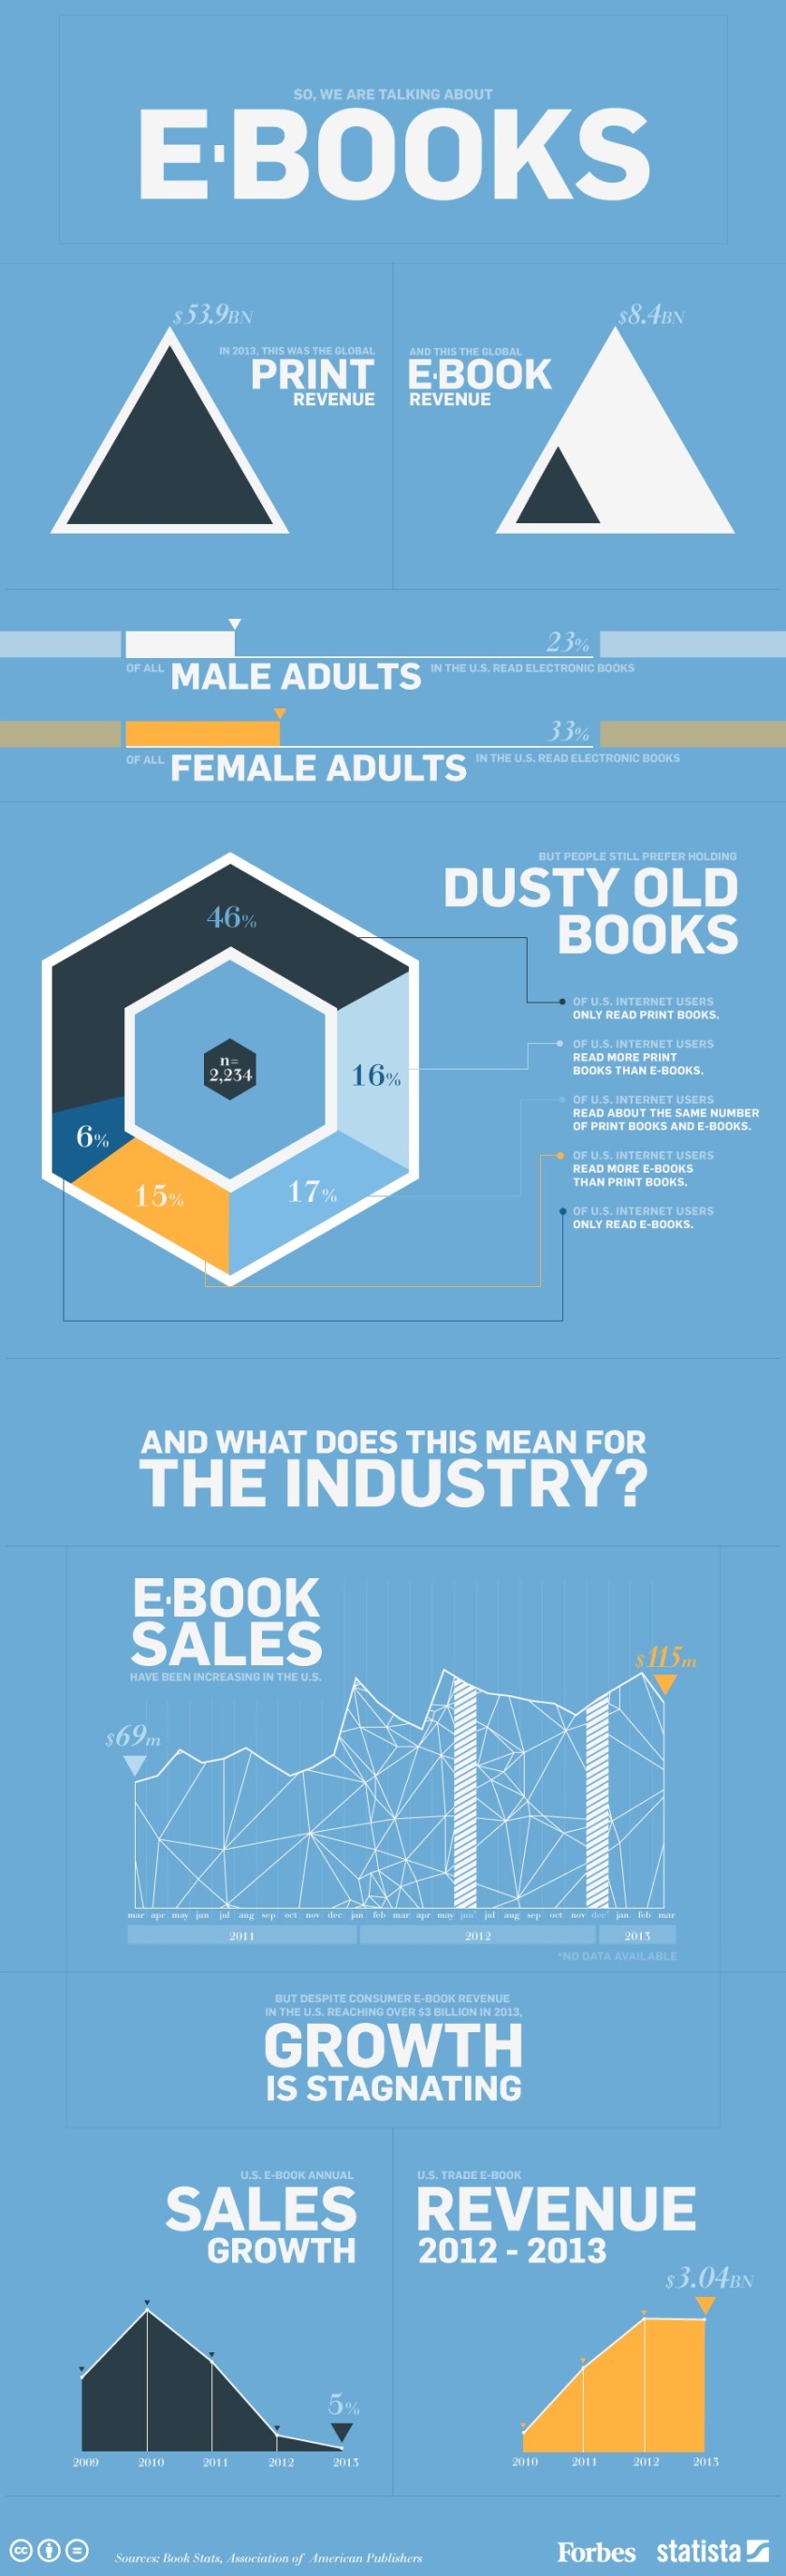 e-kirjojen markkinaosuus koko maailma, Forbes & Statista